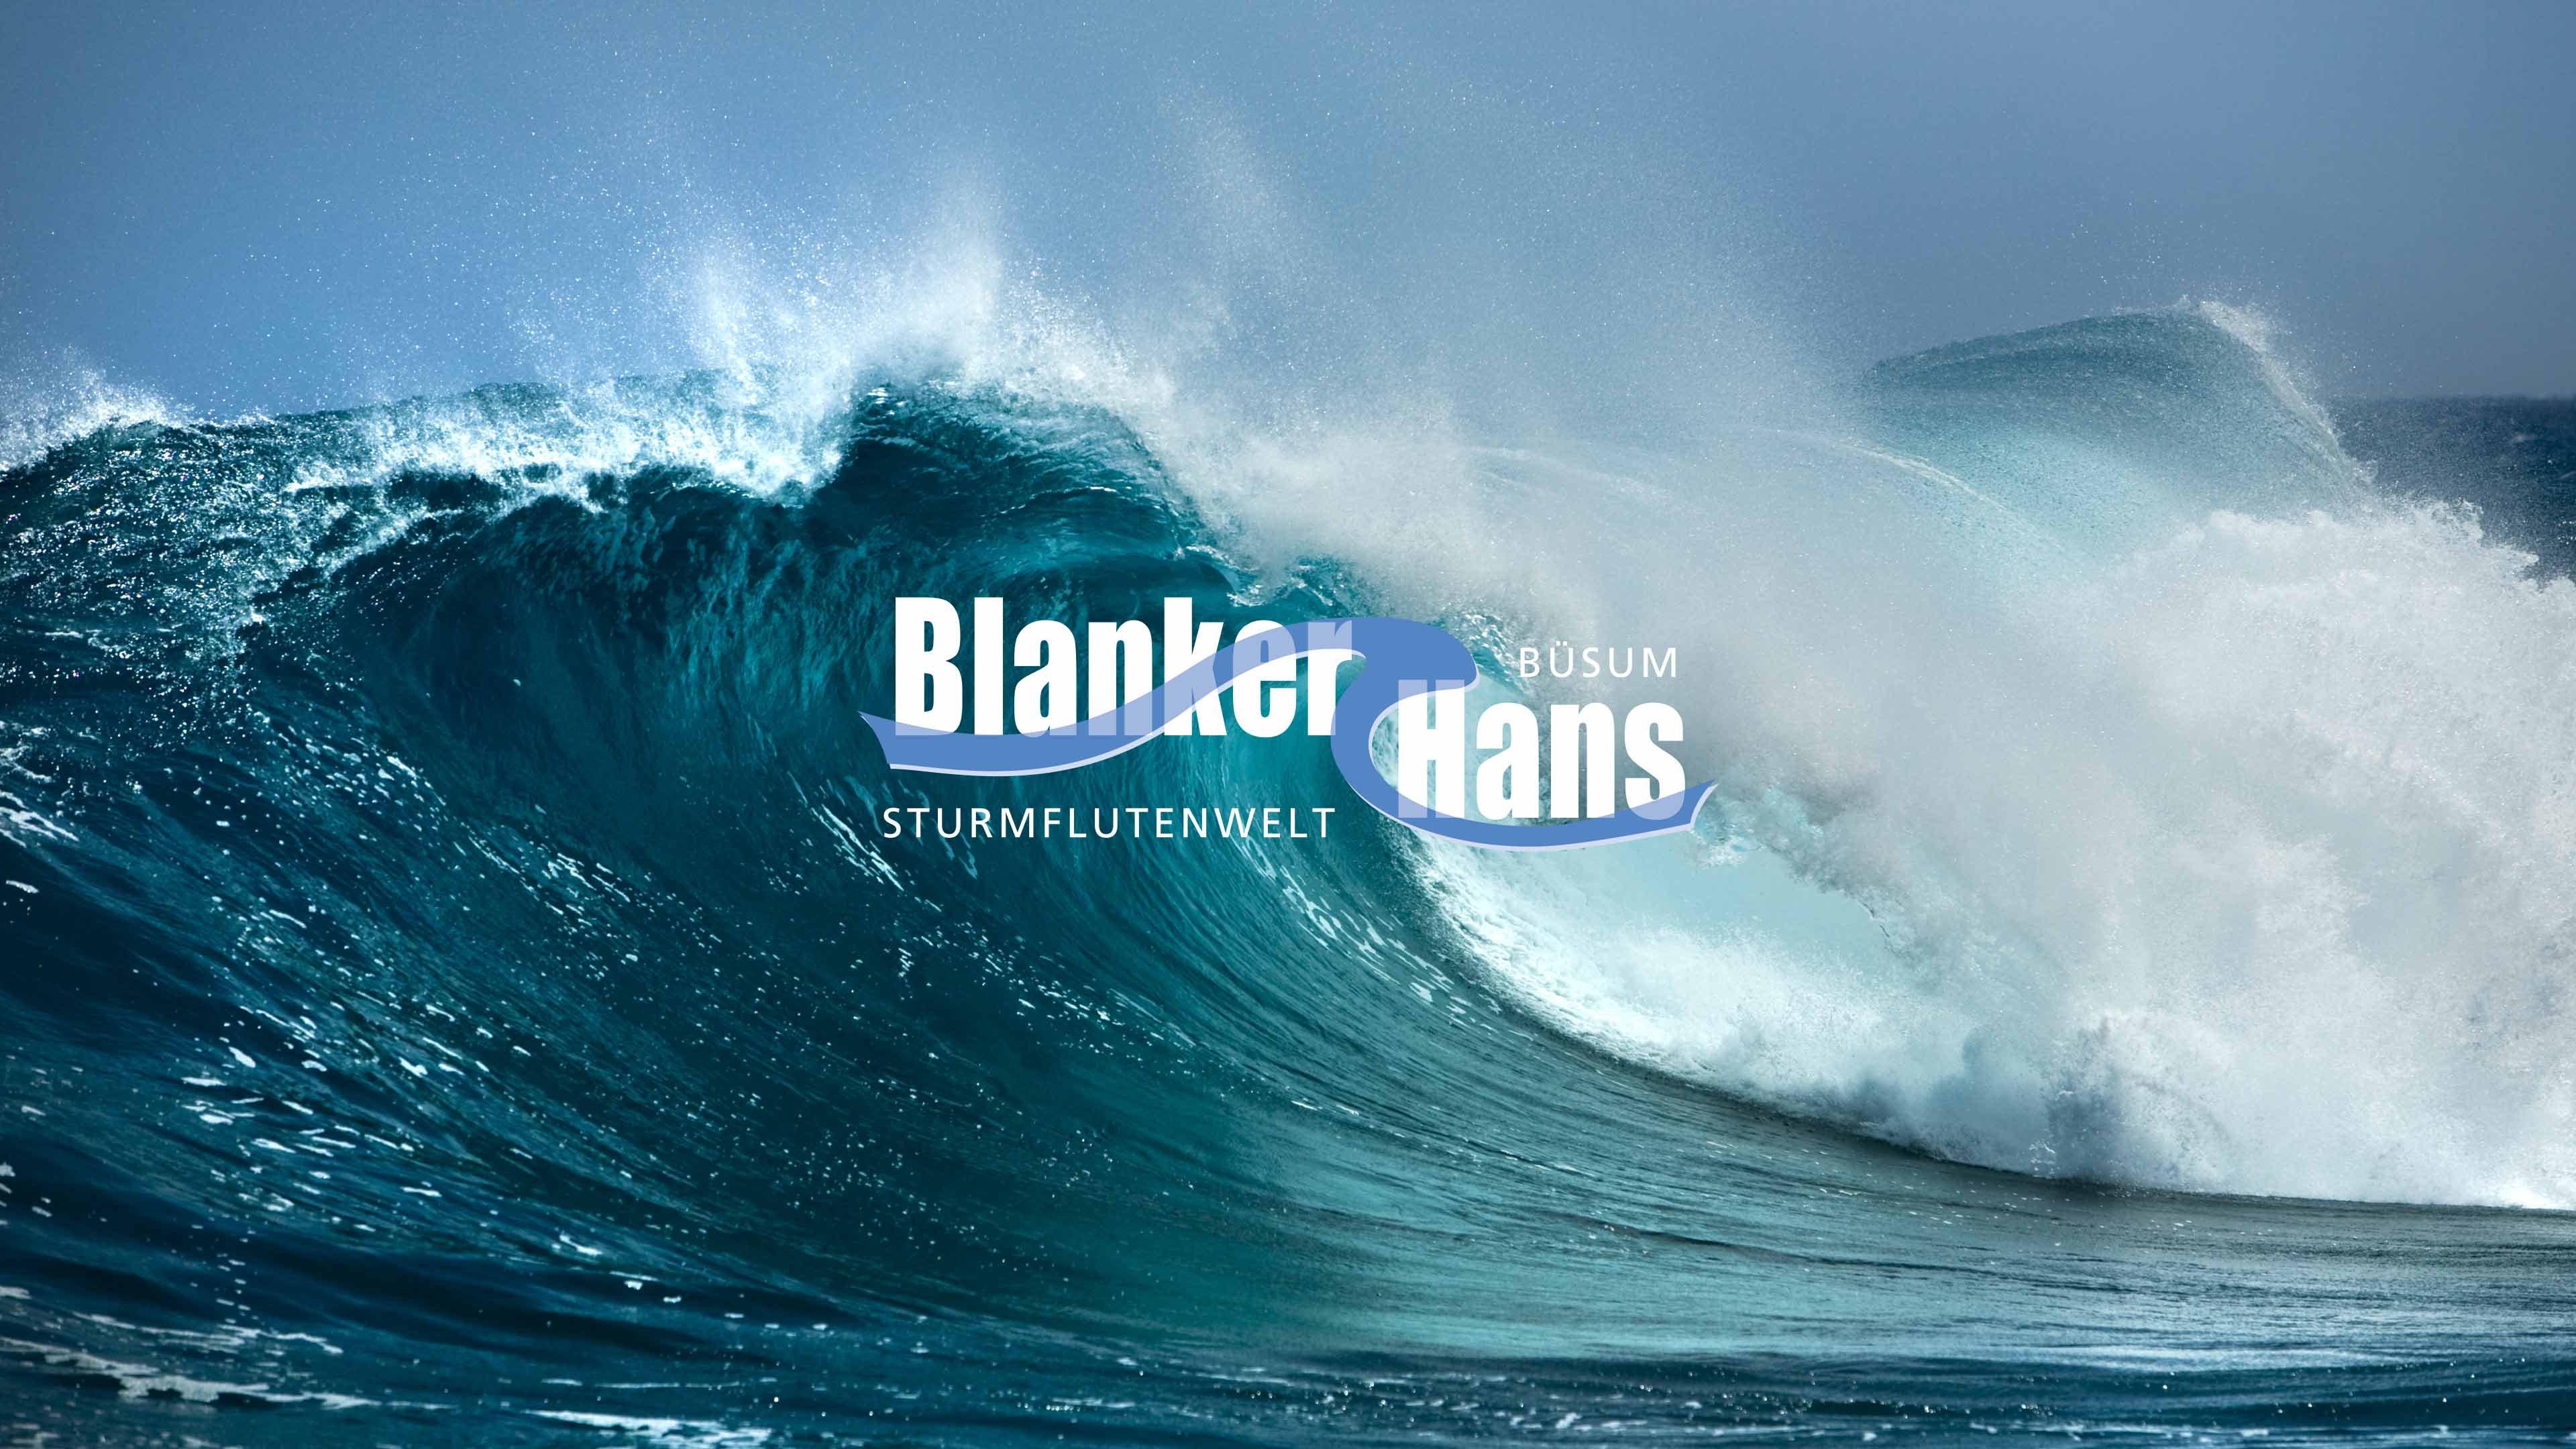 Rechteckiges Logo Blanker Hans in blau vor stürmischer See